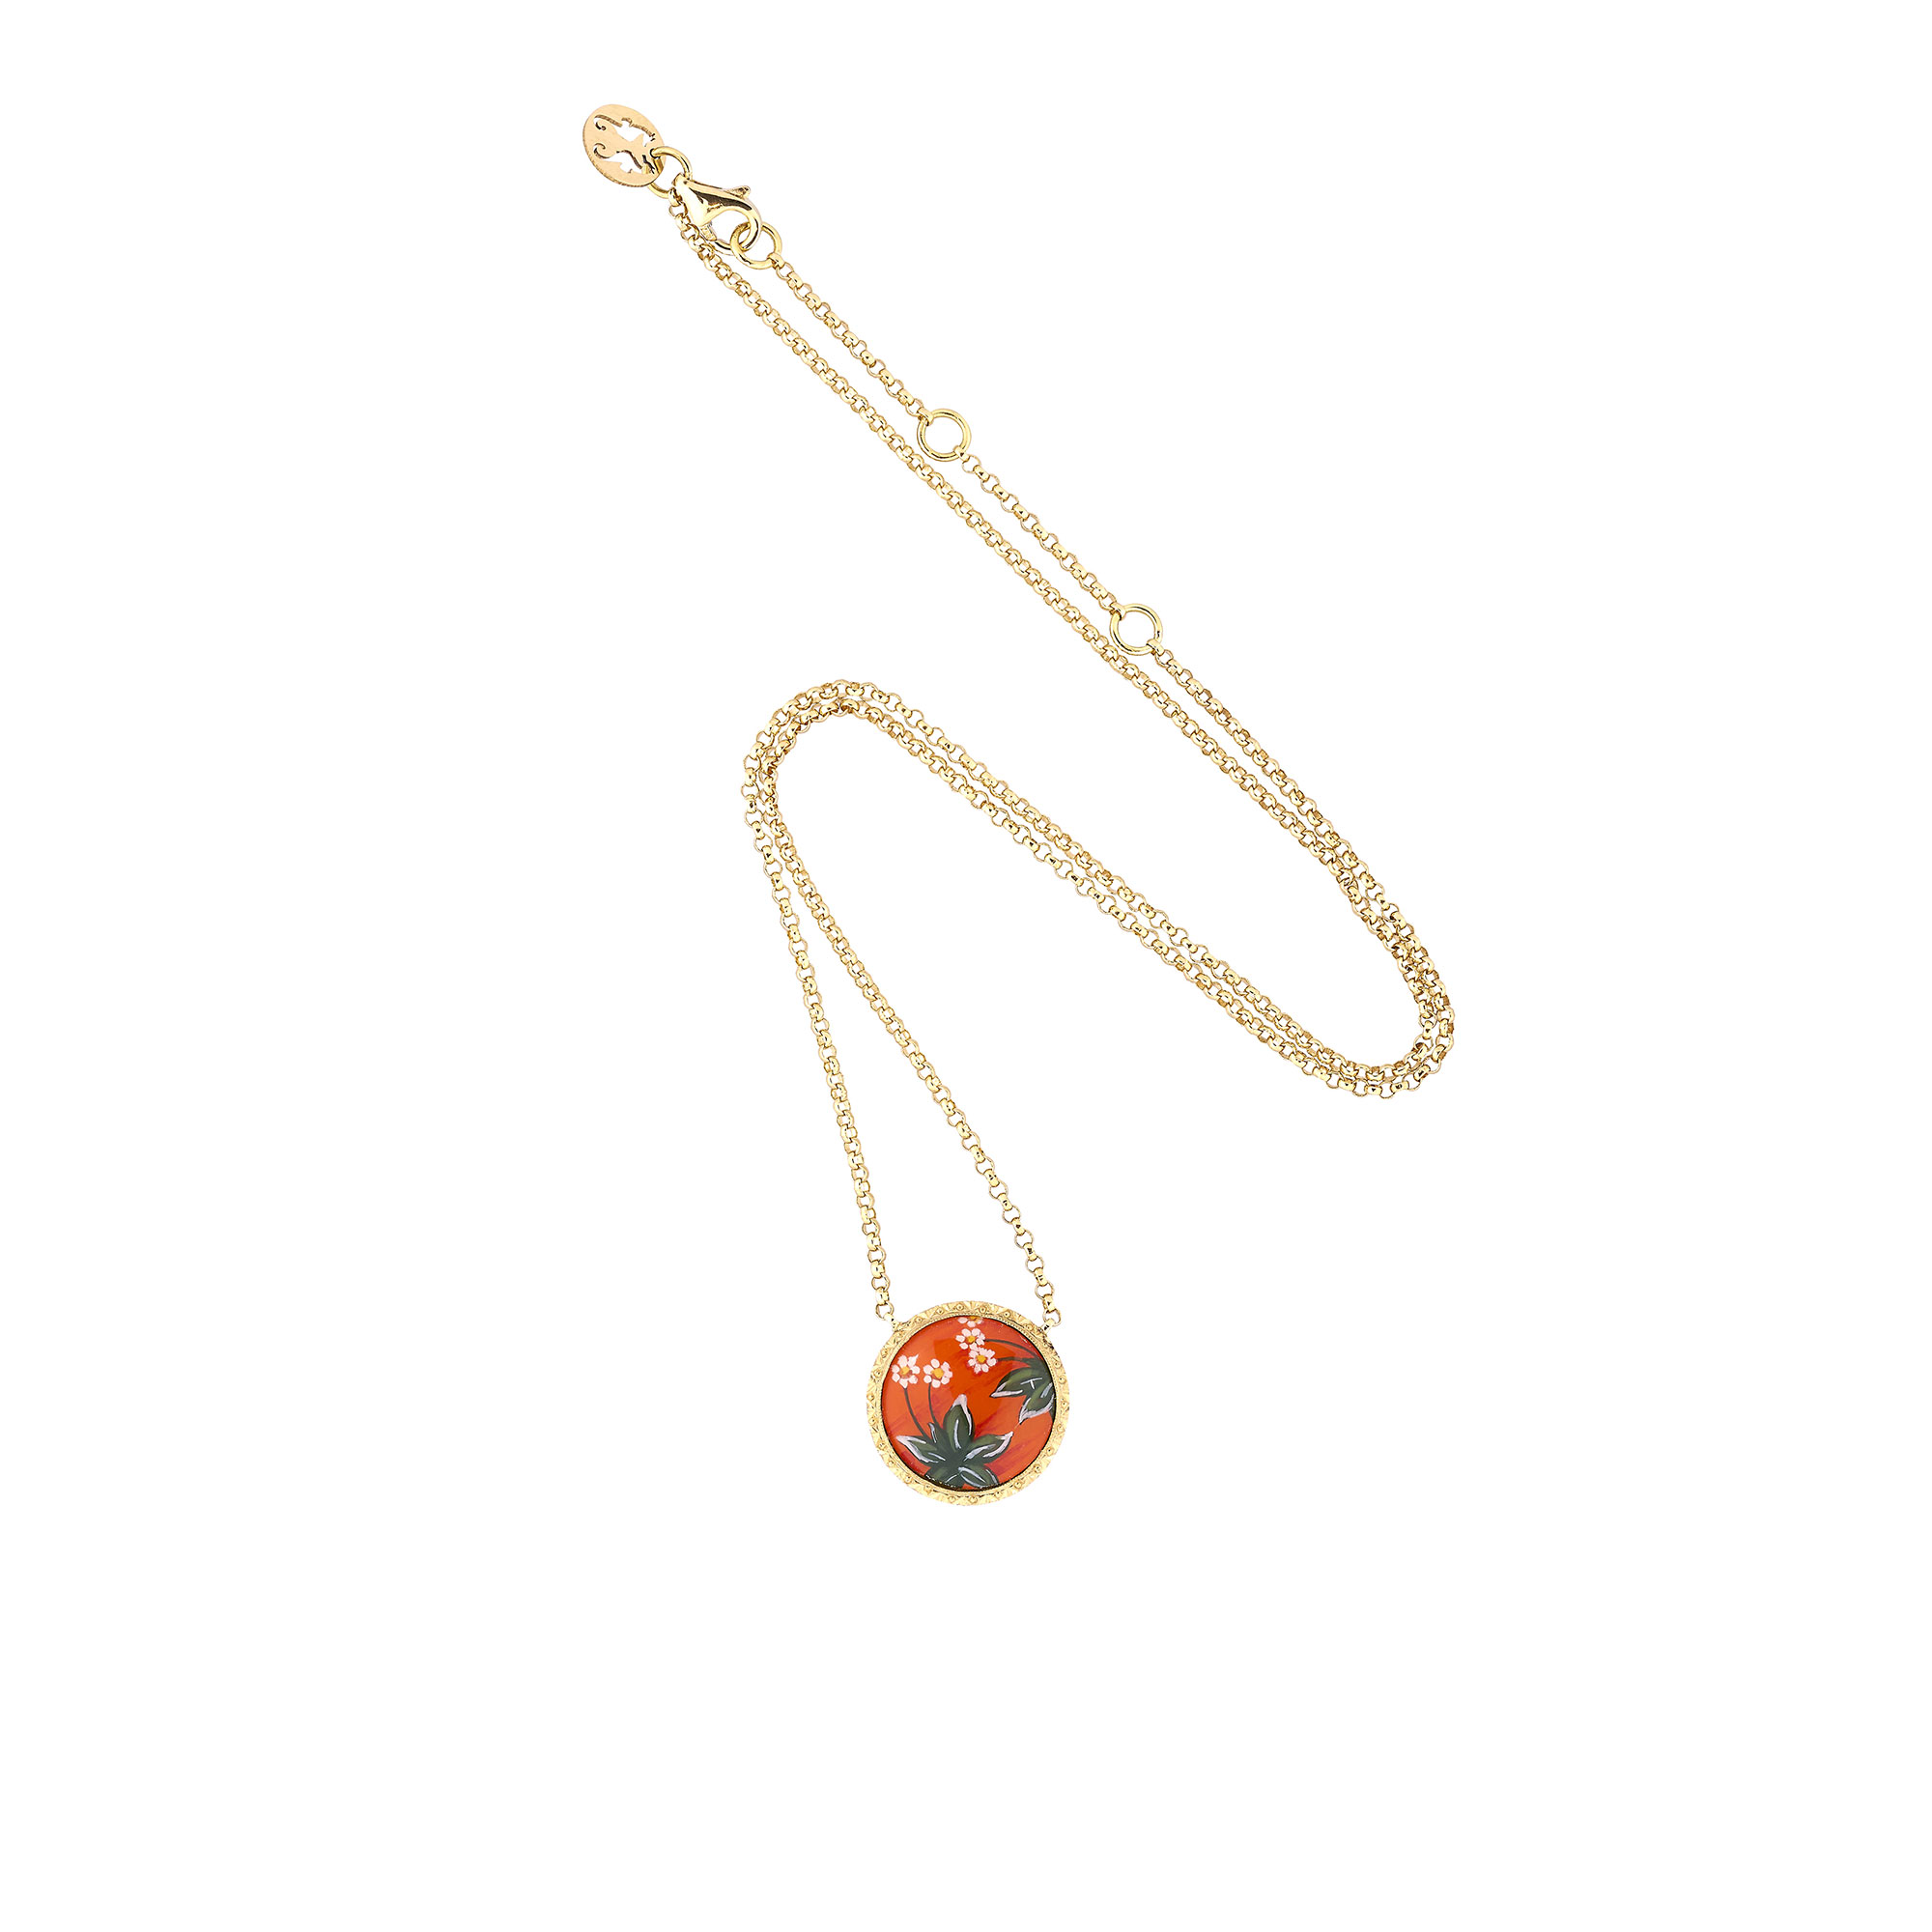 Blossom carnelian necklace, Louis Vuitton